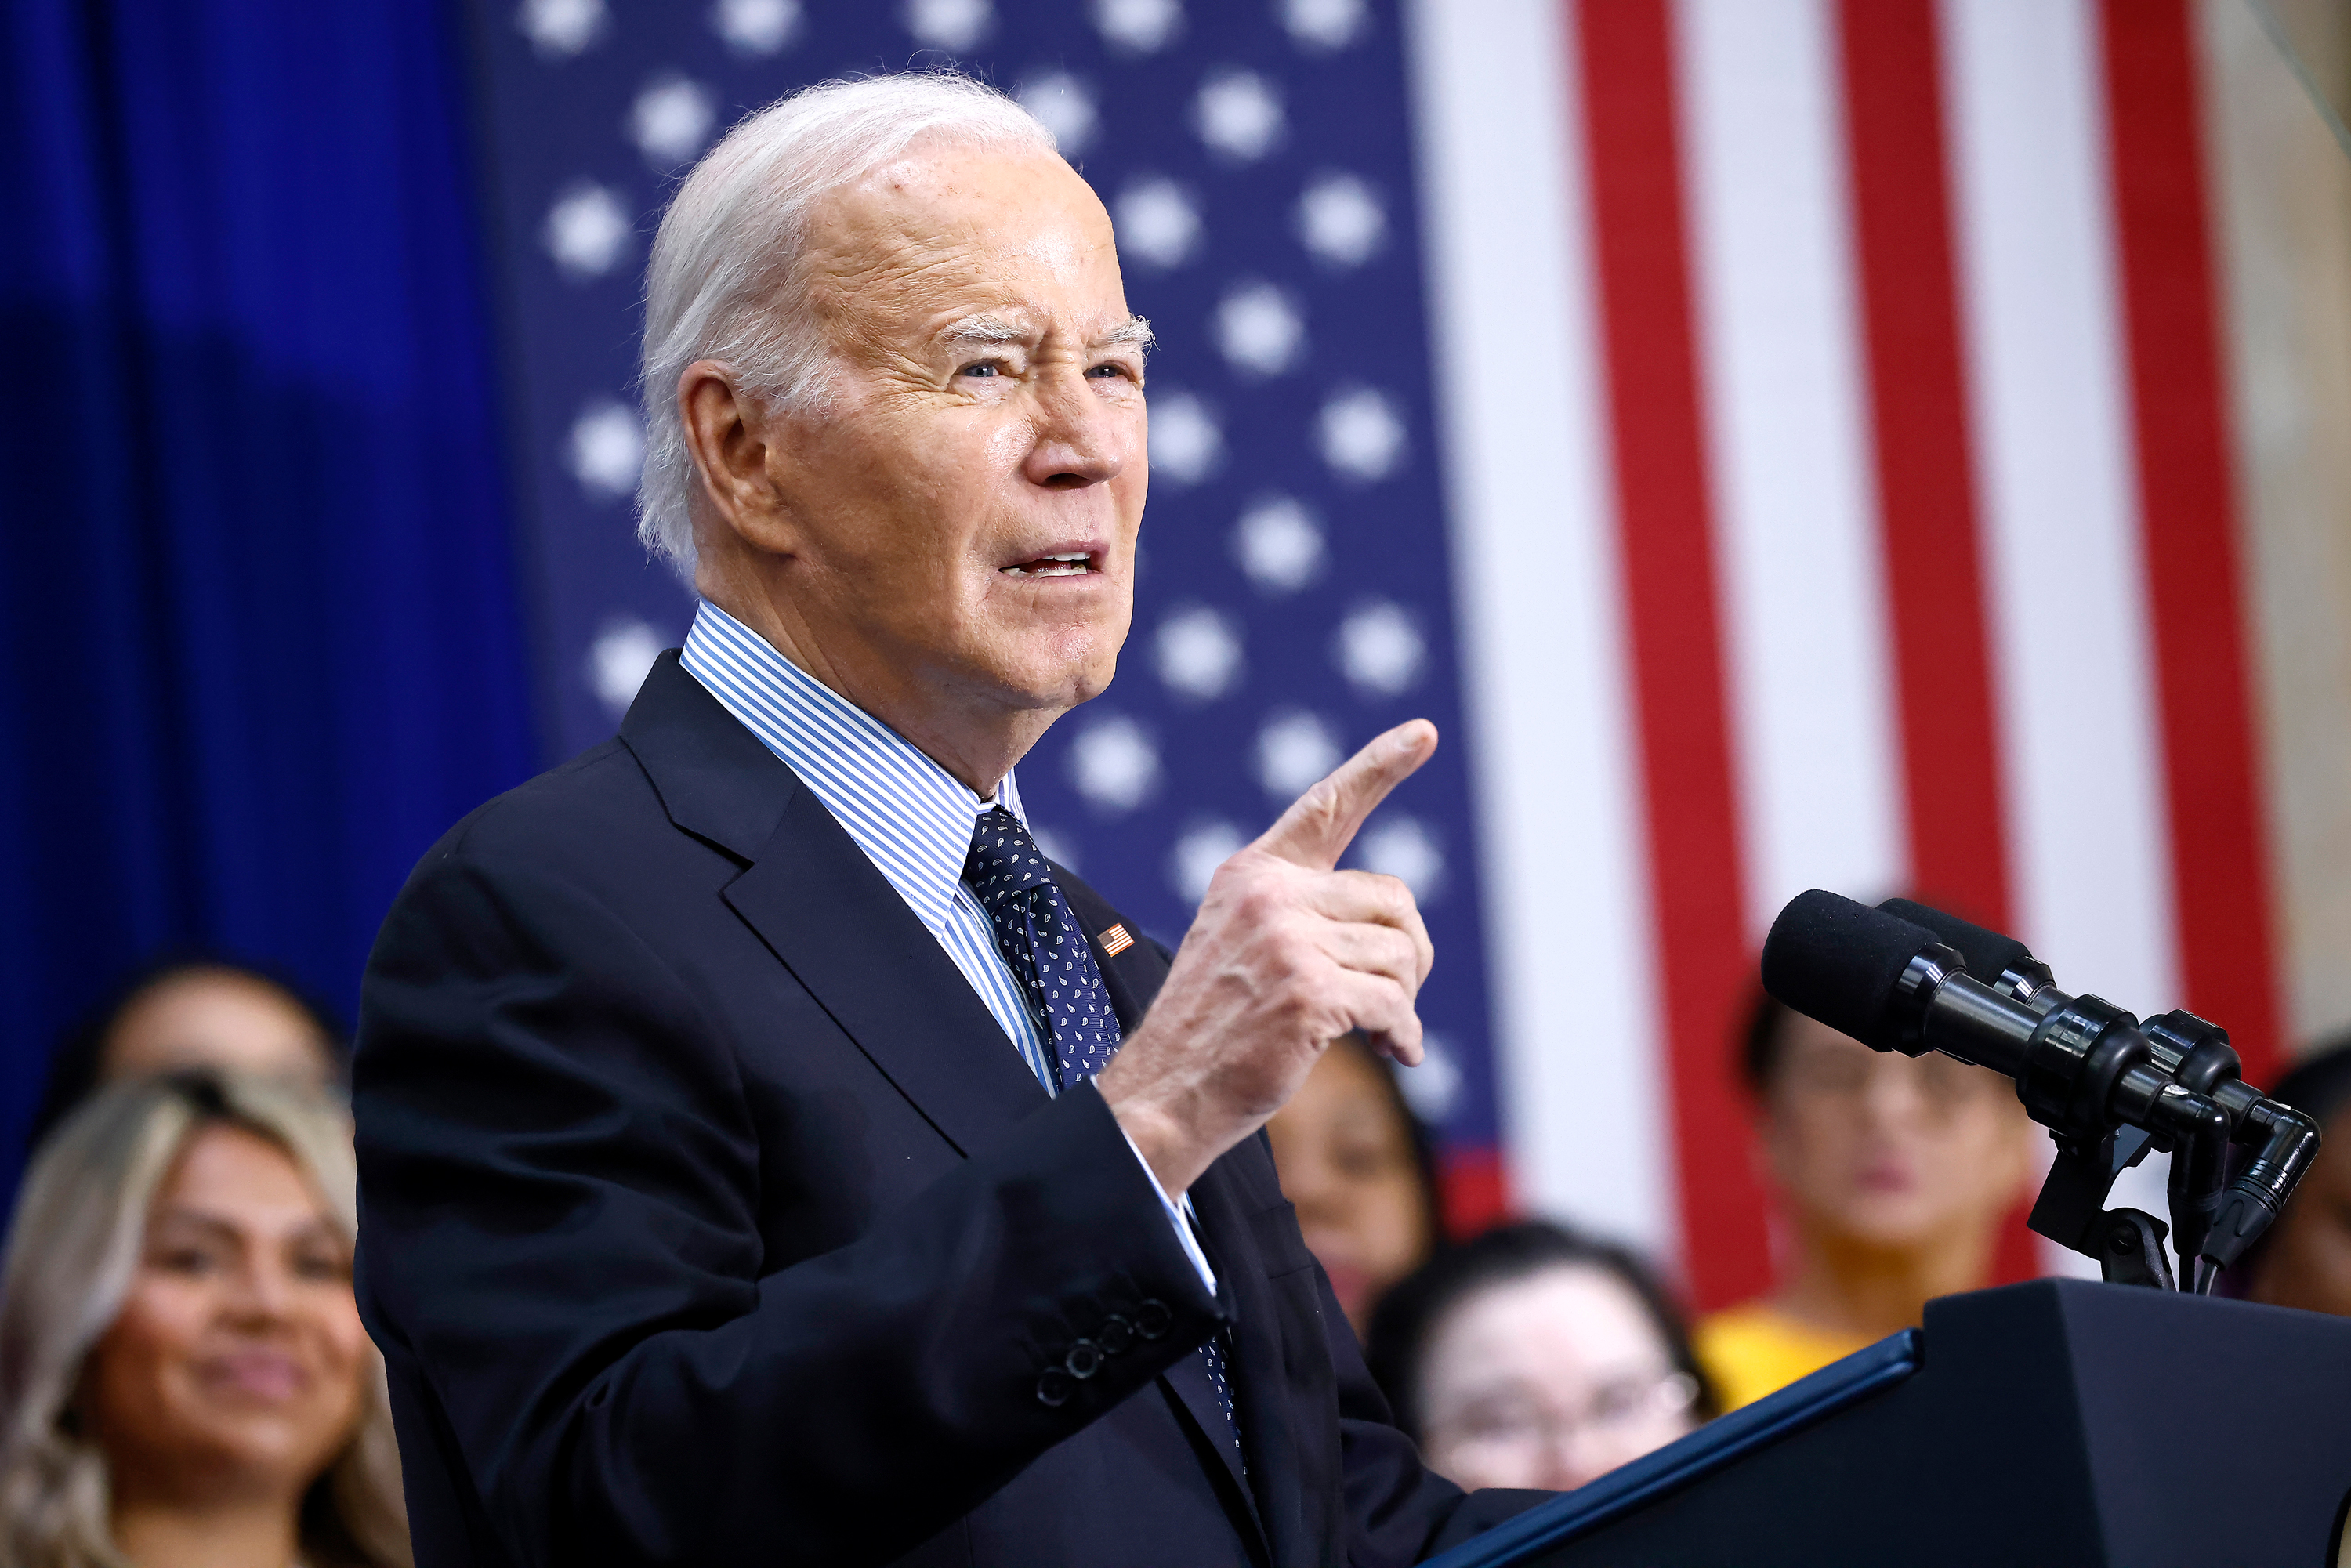 Joe Biden speaks in Union Station in Washington, DC on April 9.